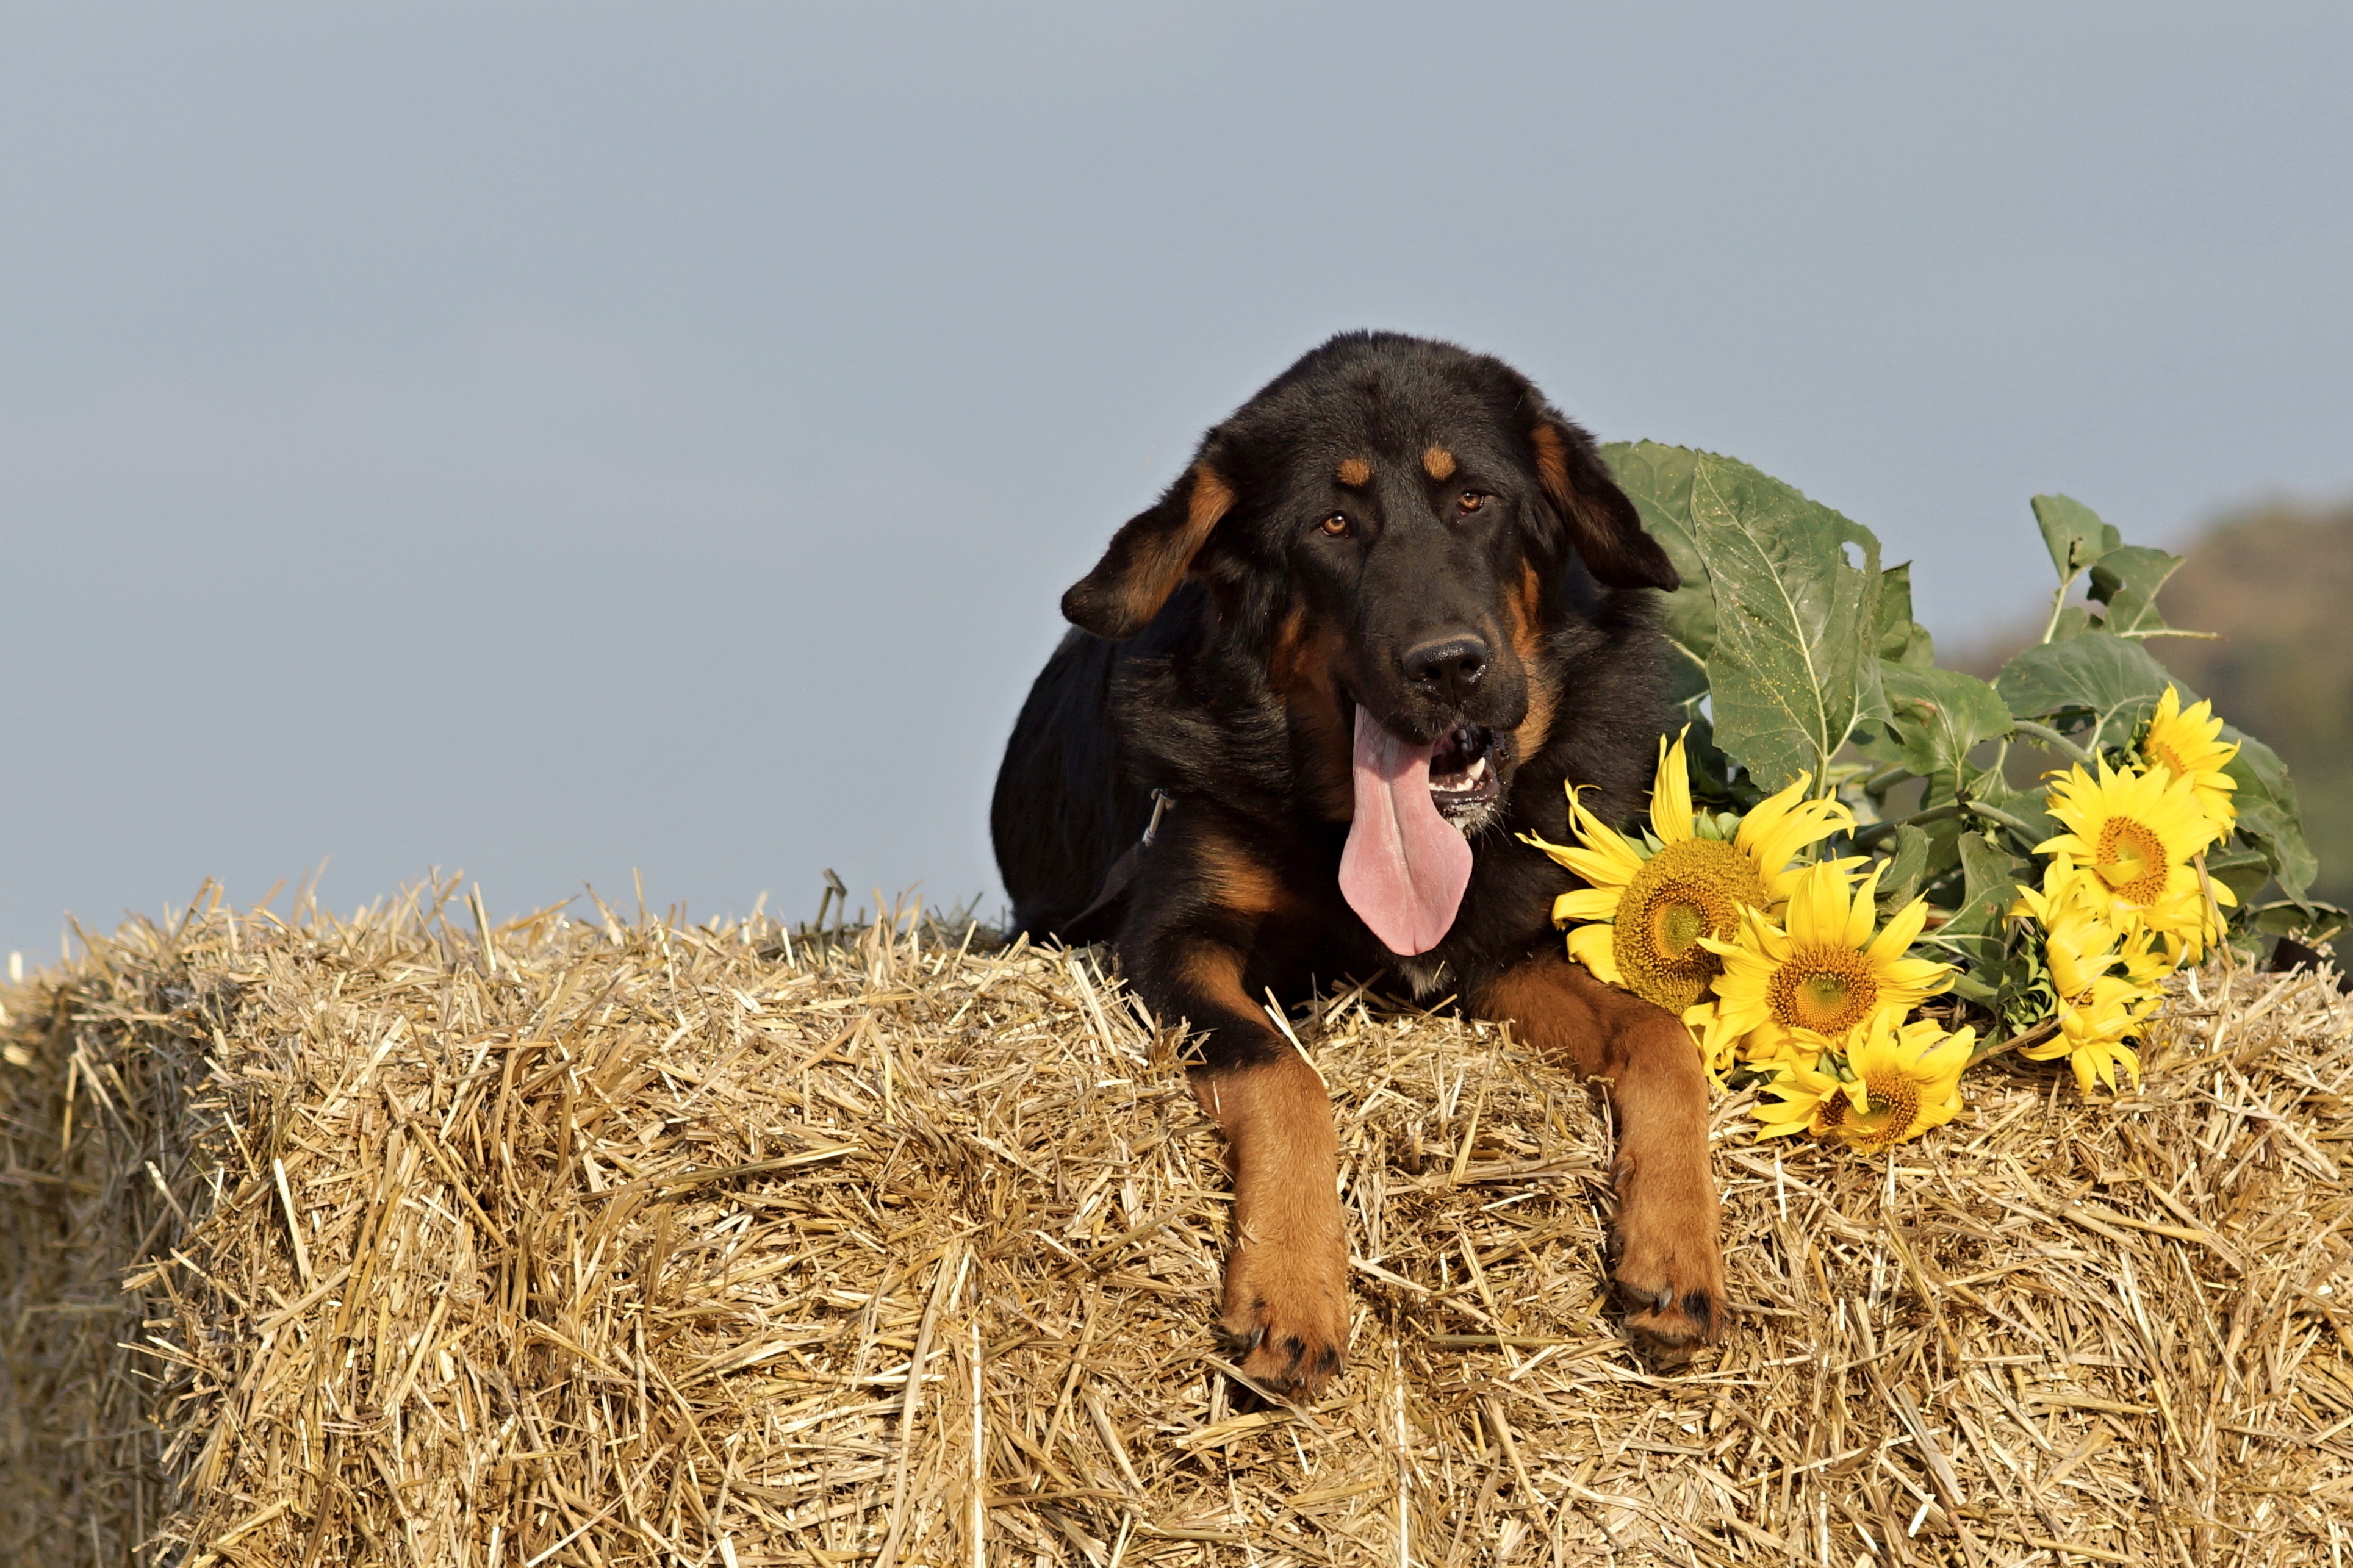 animals, sunflowers, dog, muzzle, sheepdog, sheep dog, hay